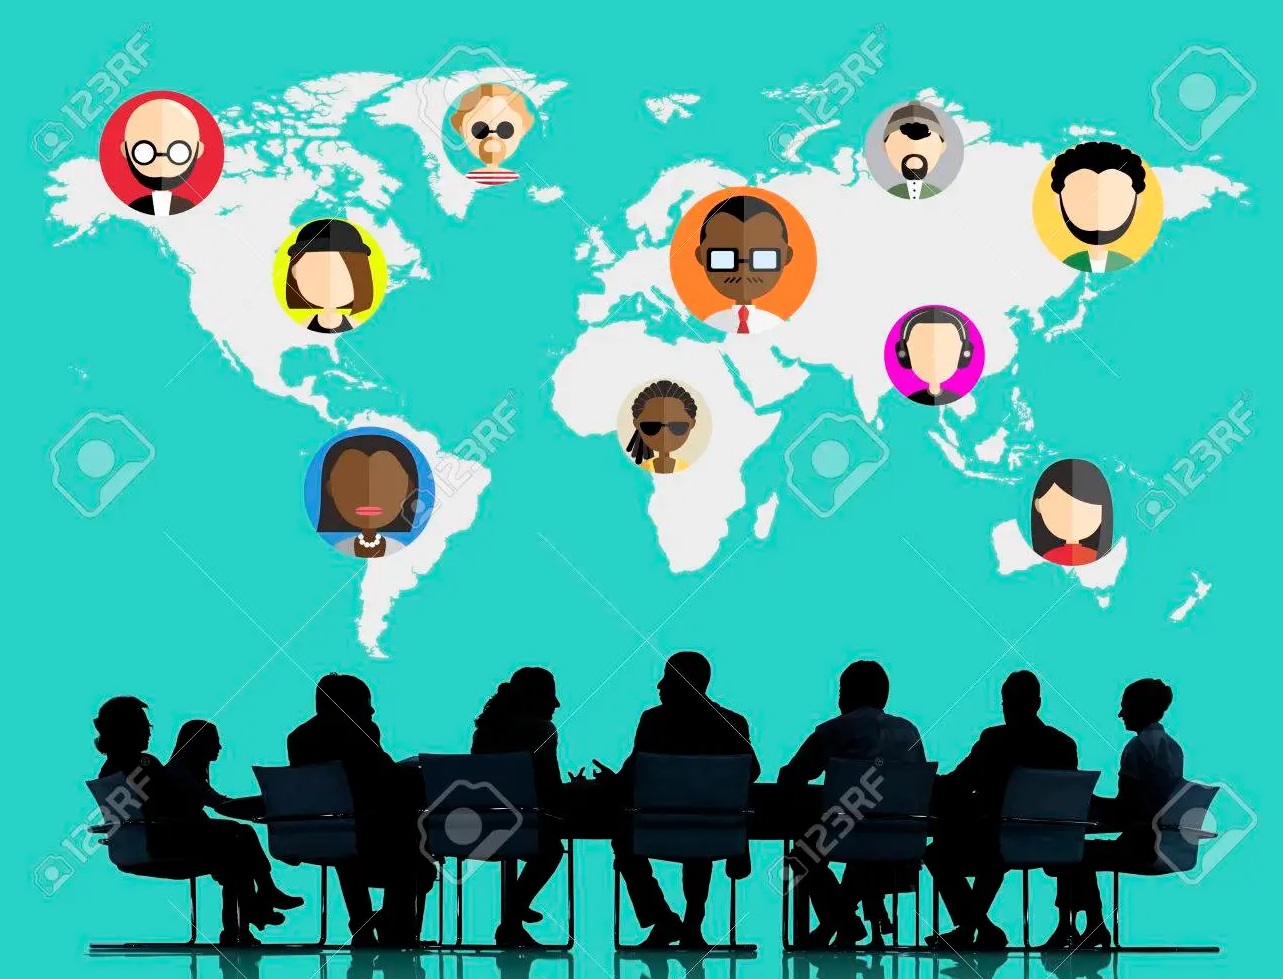 Міжнародна співпраця кафедри: онлайн-зустрічі з лідерами й членами асоціацій соціальних працівників, освітян з усього світу (23.03.22; 30.03.22)